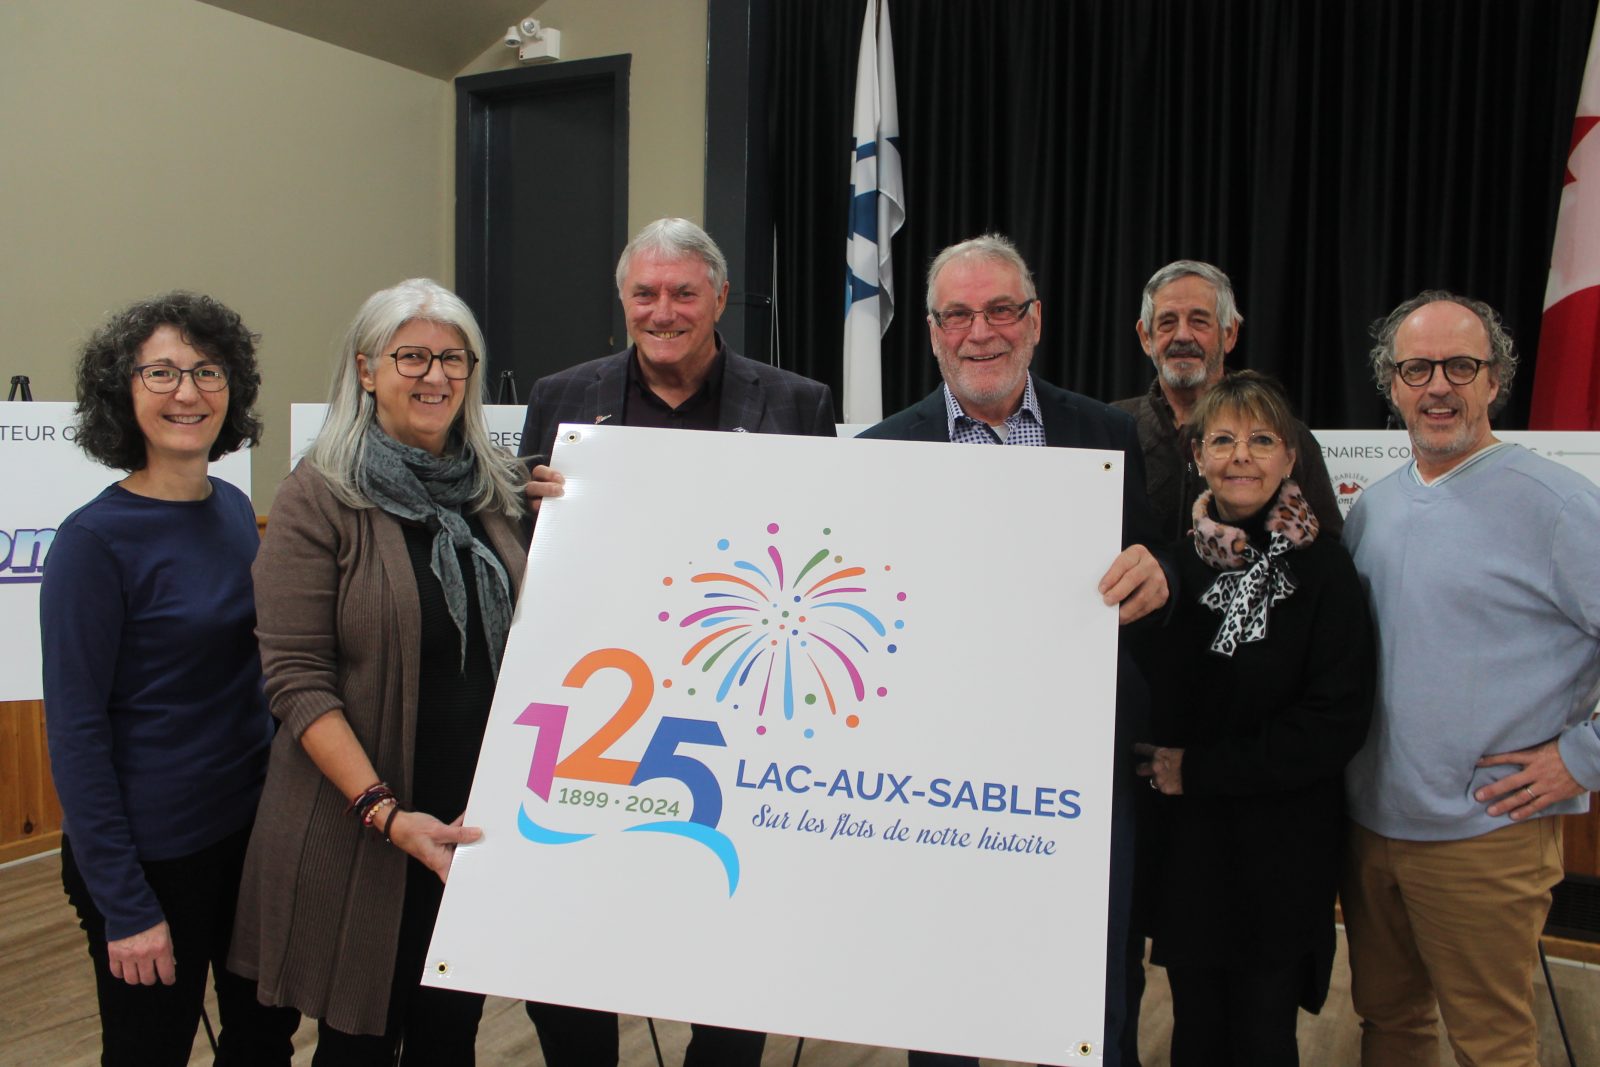 Lac-aux-Sables fêtera ses 125 ans en 2024 